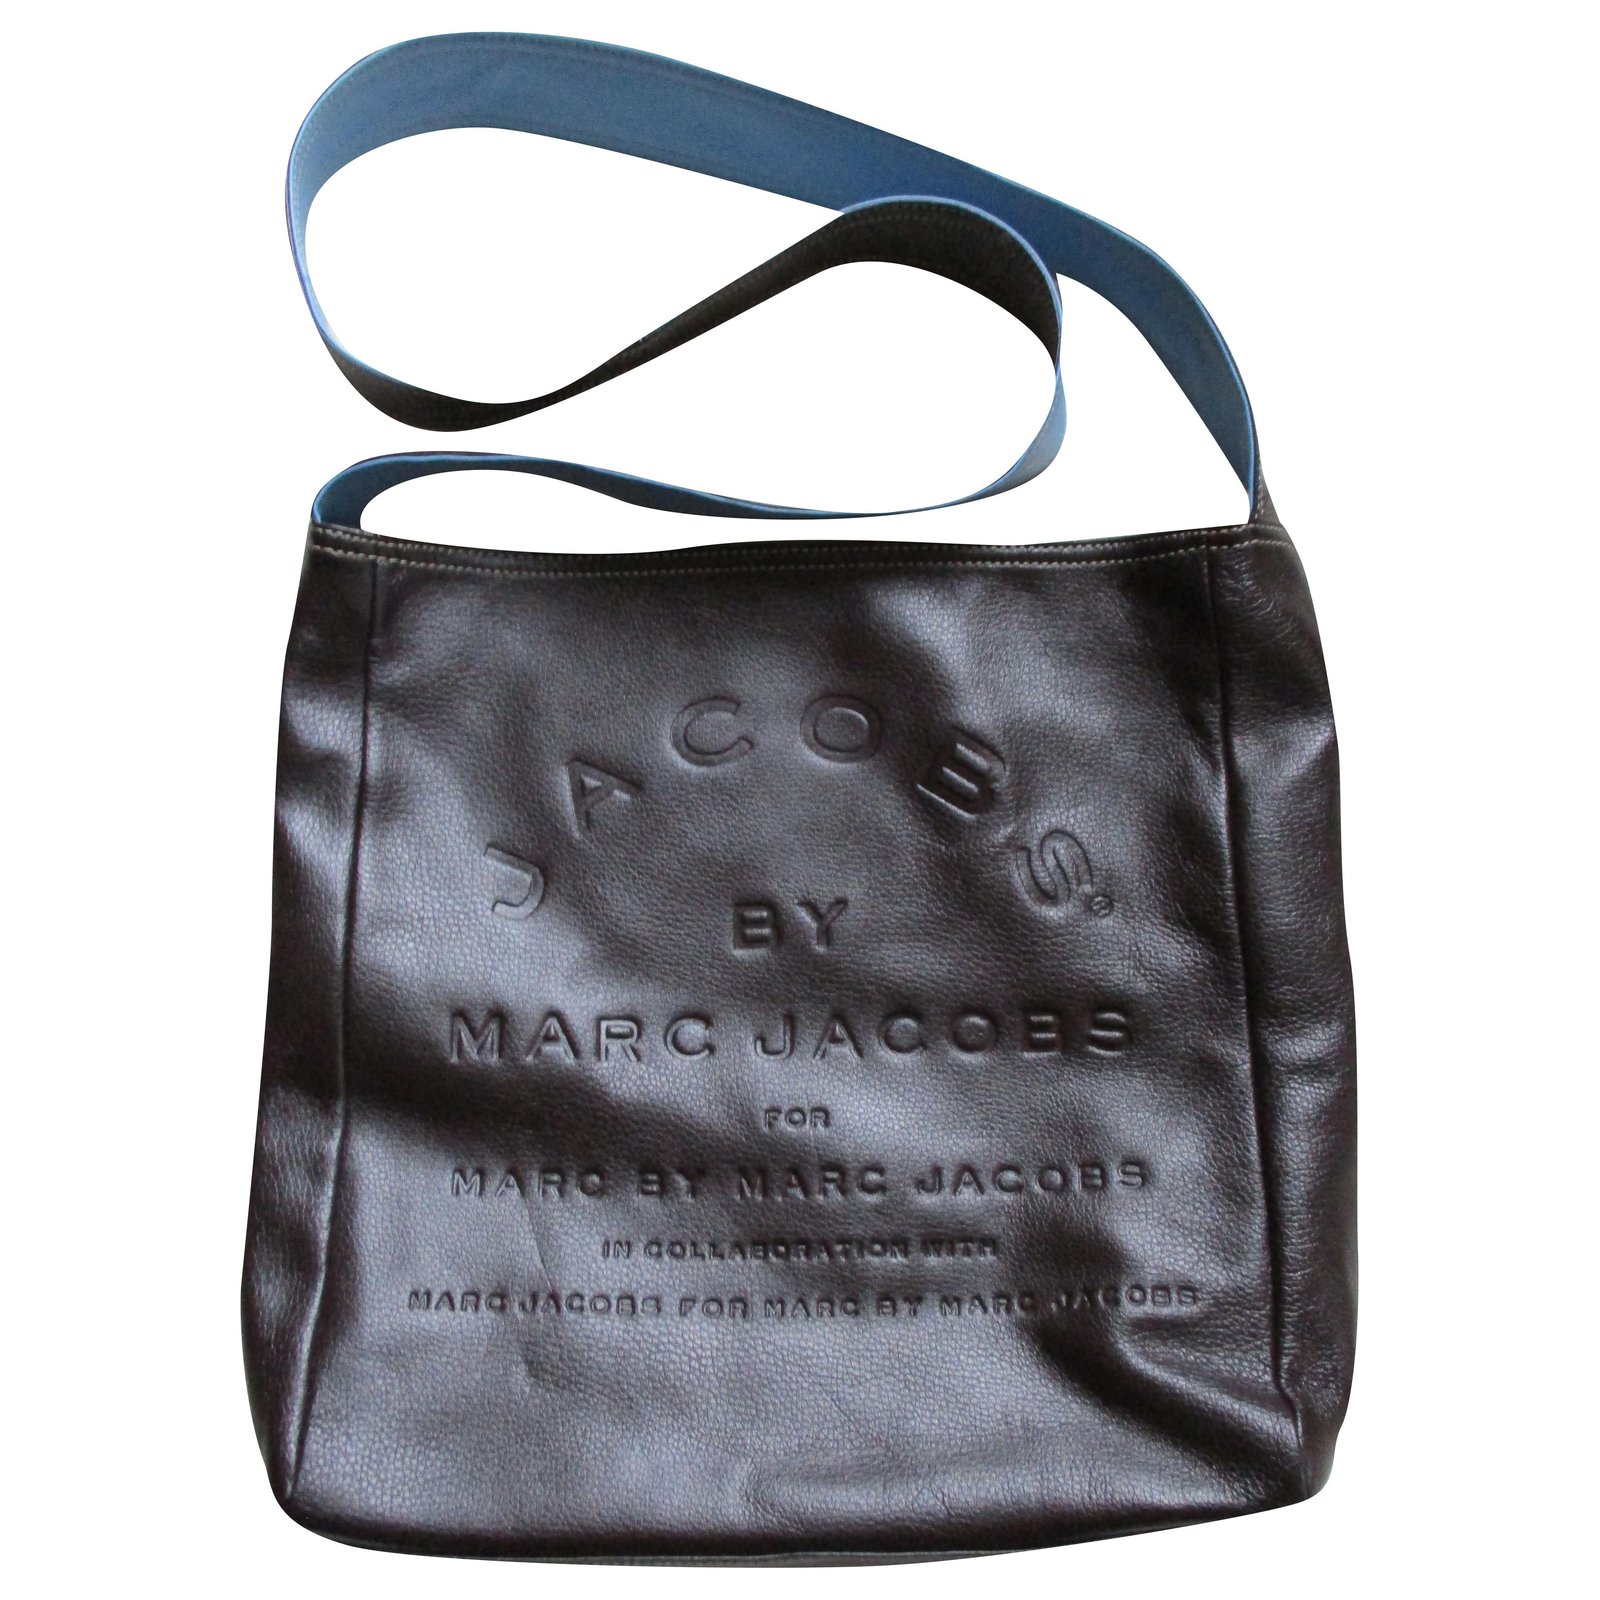 MARC JACOBS Black Leather Shoulder Bag